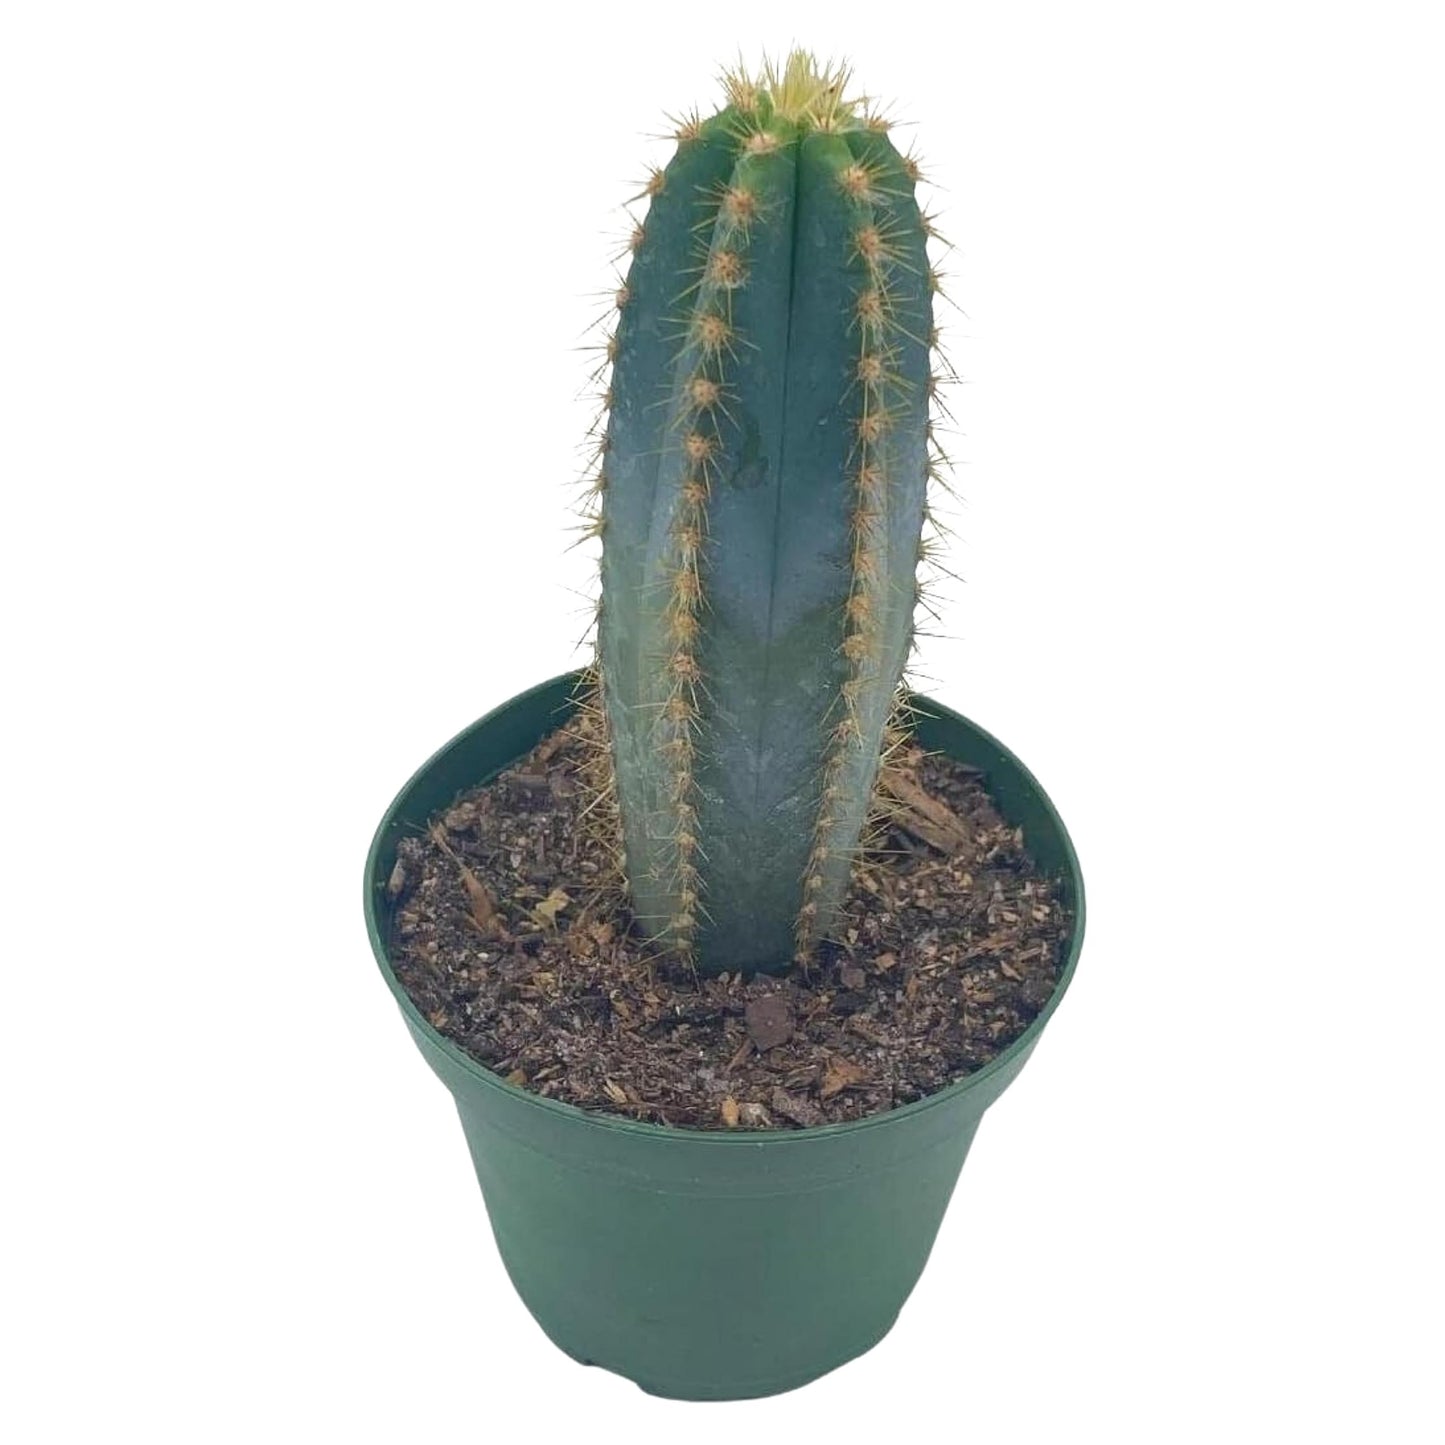 Blue Columnar Cactus, Pilosocereus pachycladus Cacti, Column Cactus, Blue Torch Cactus, Woolly Torch Cactus, in 4 inch Pot